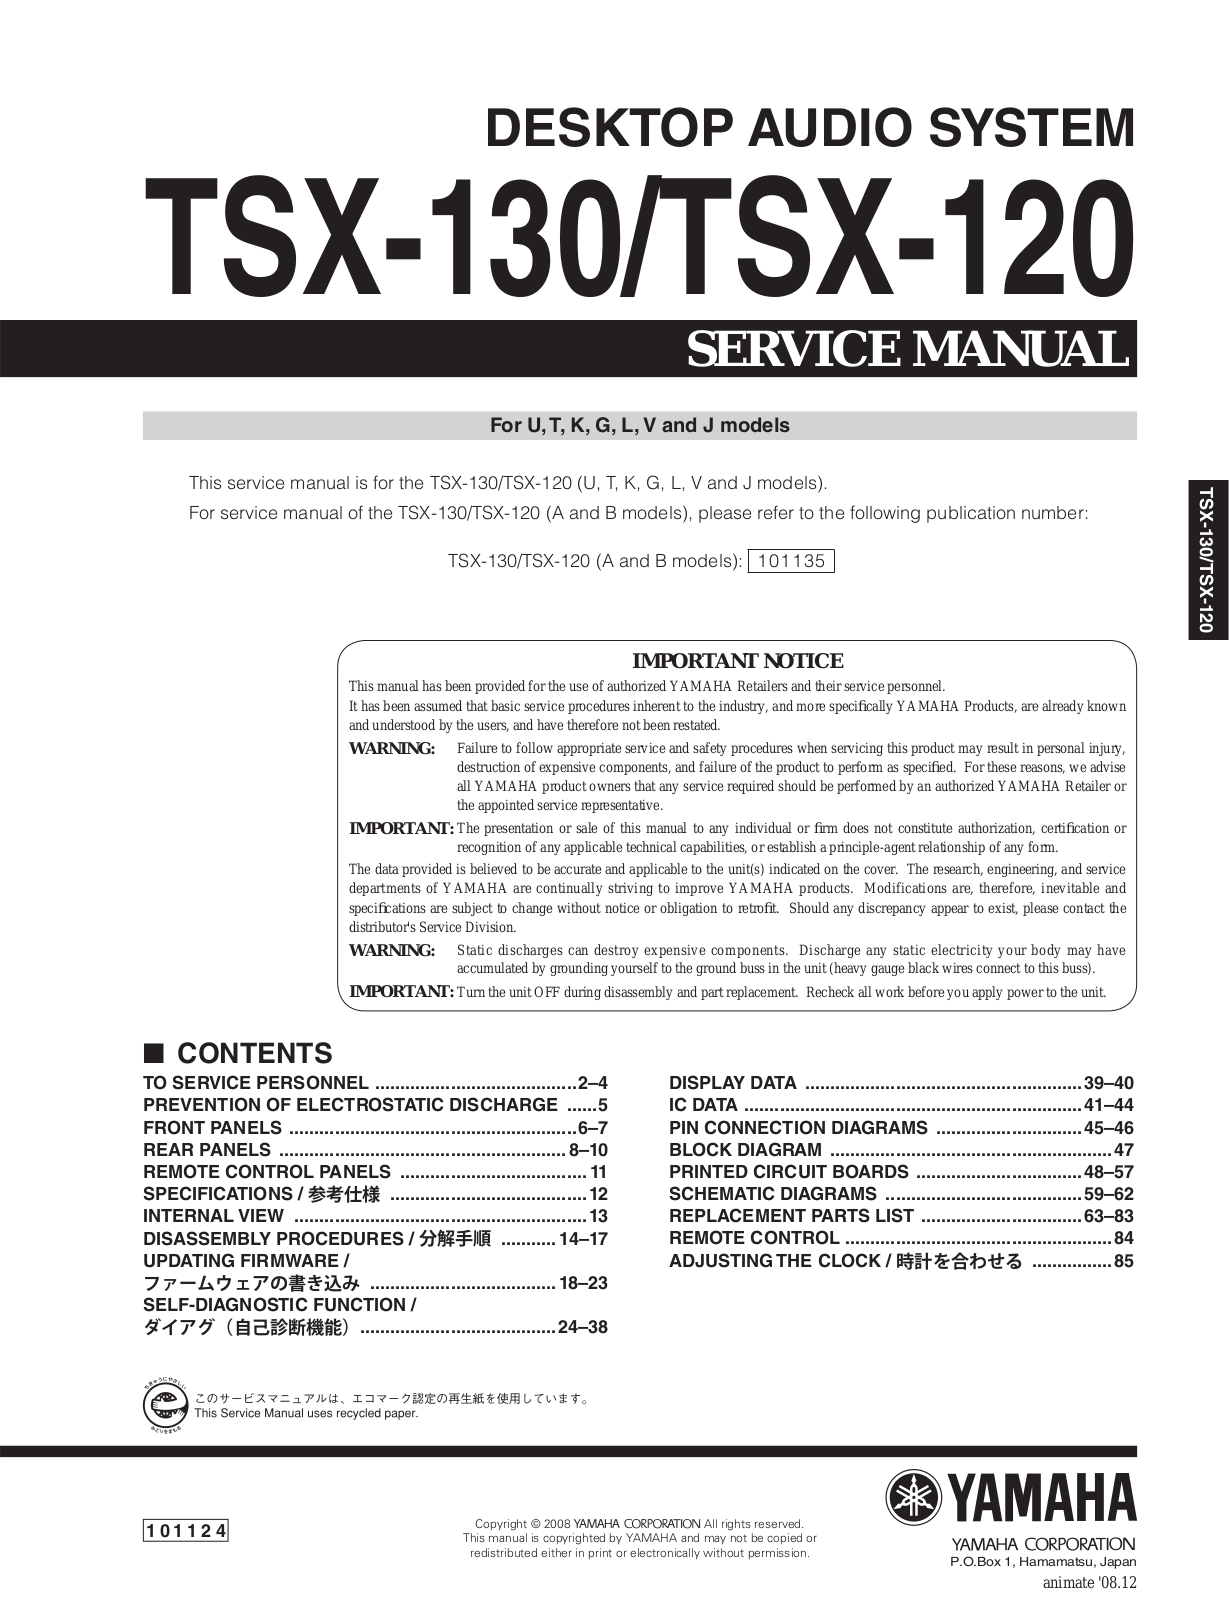 Yamaha TSX-120 Service Manual